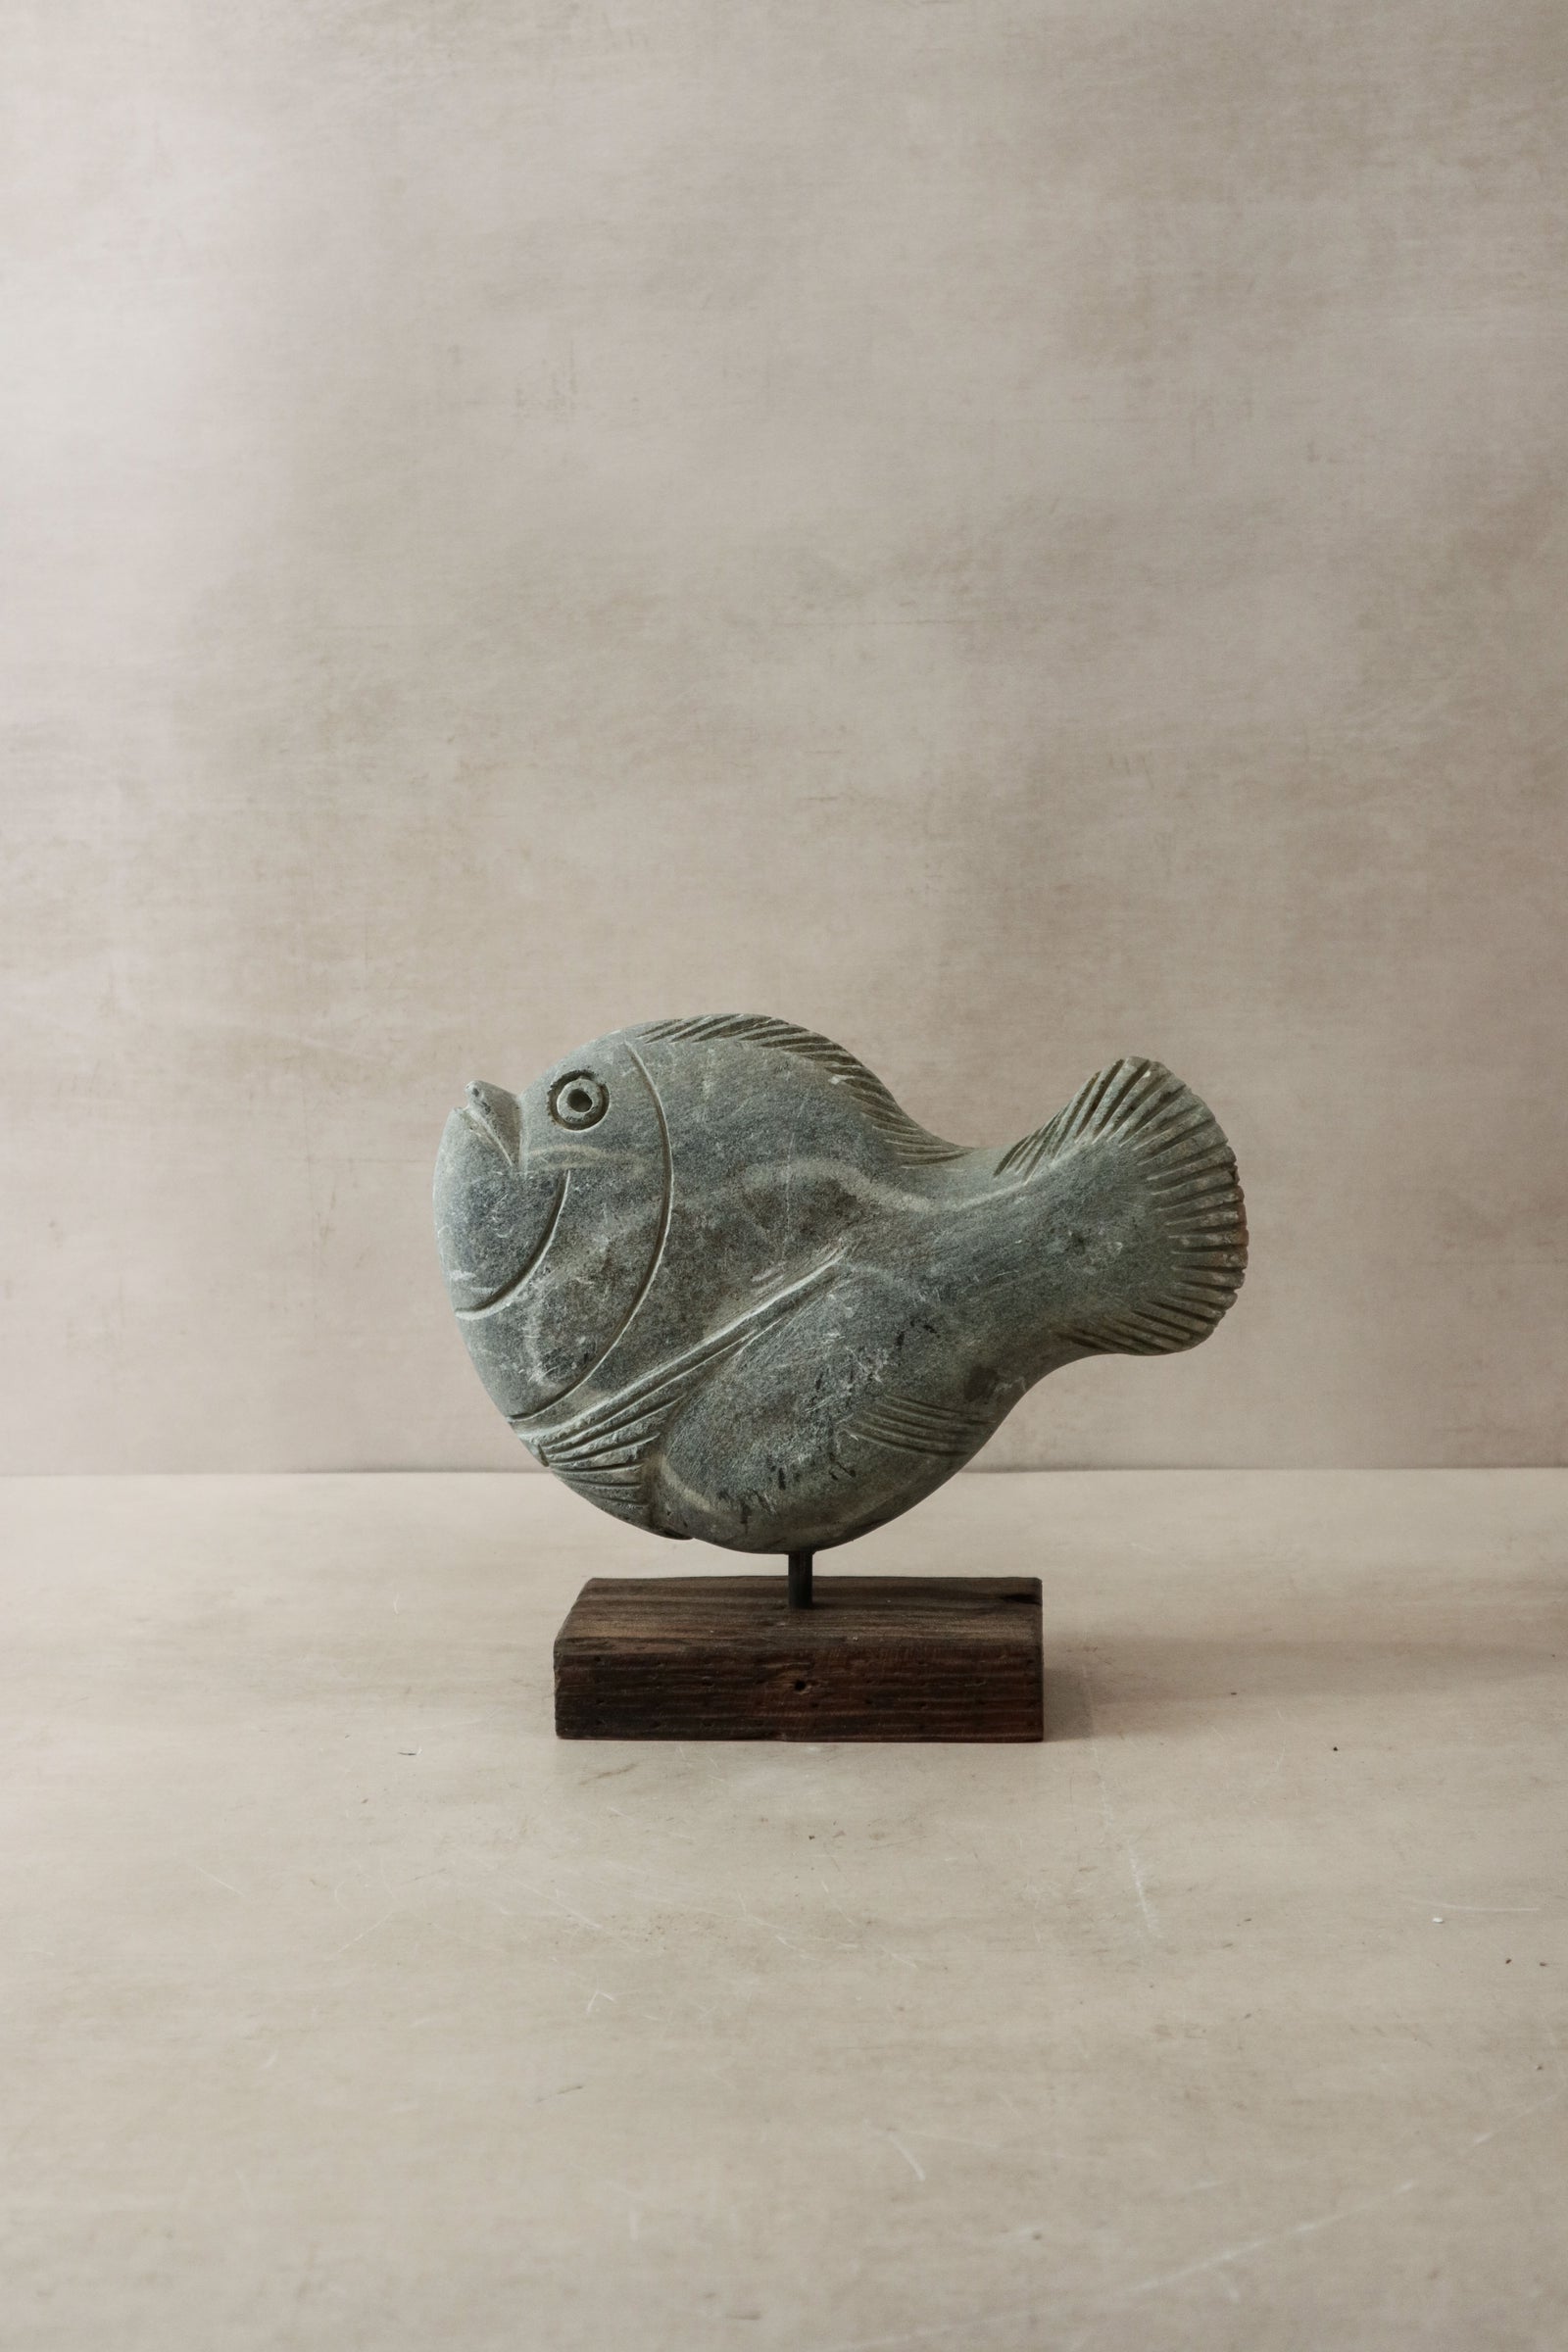 Stone Fish Sculpture - Zimbabwe - 31.4